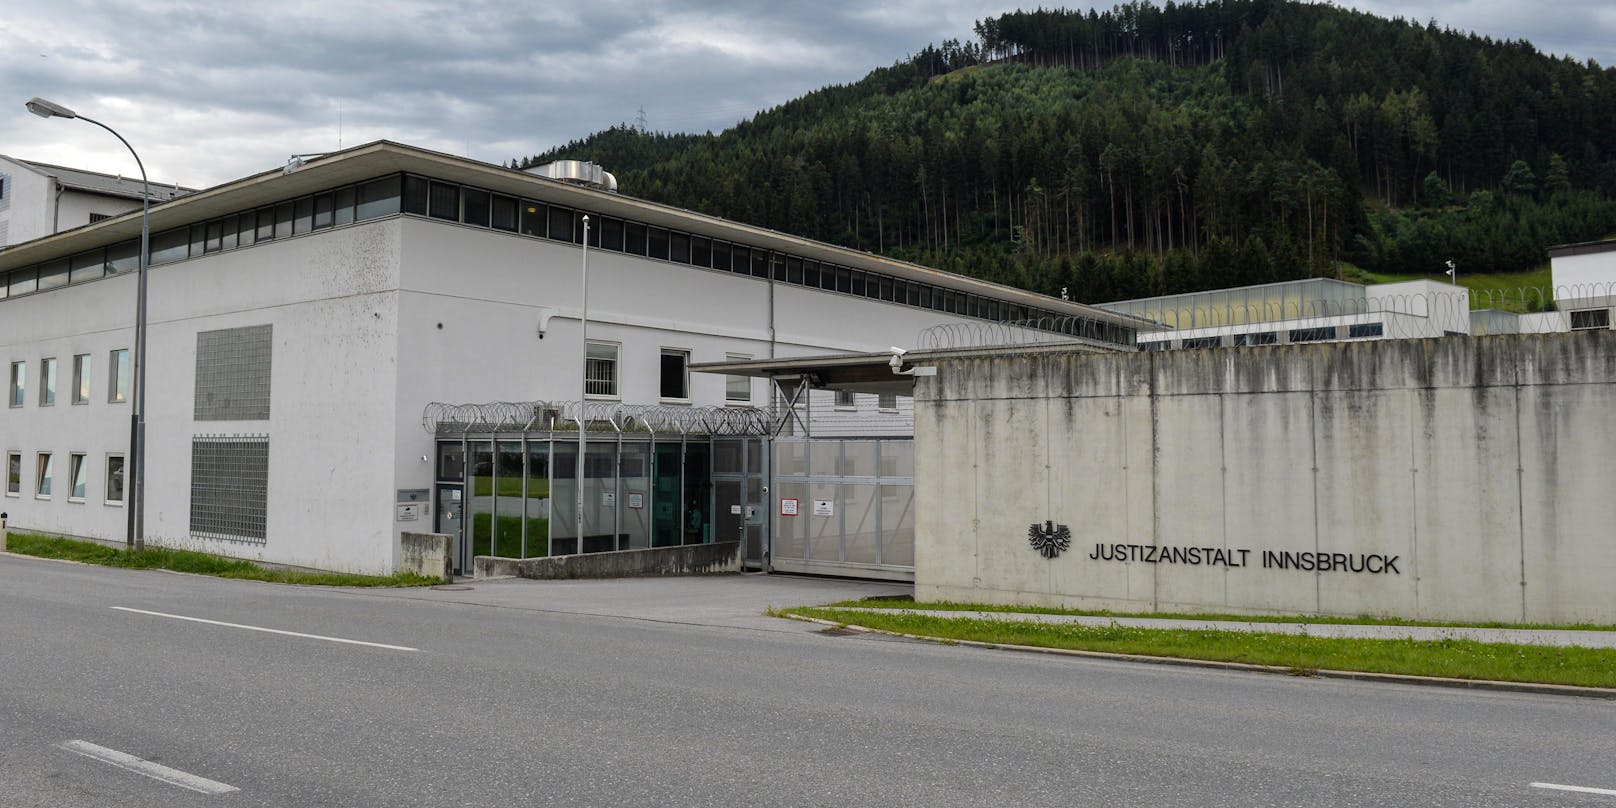 Der Vorfall ereignete sich in der Justizanstalt Innsbruck.